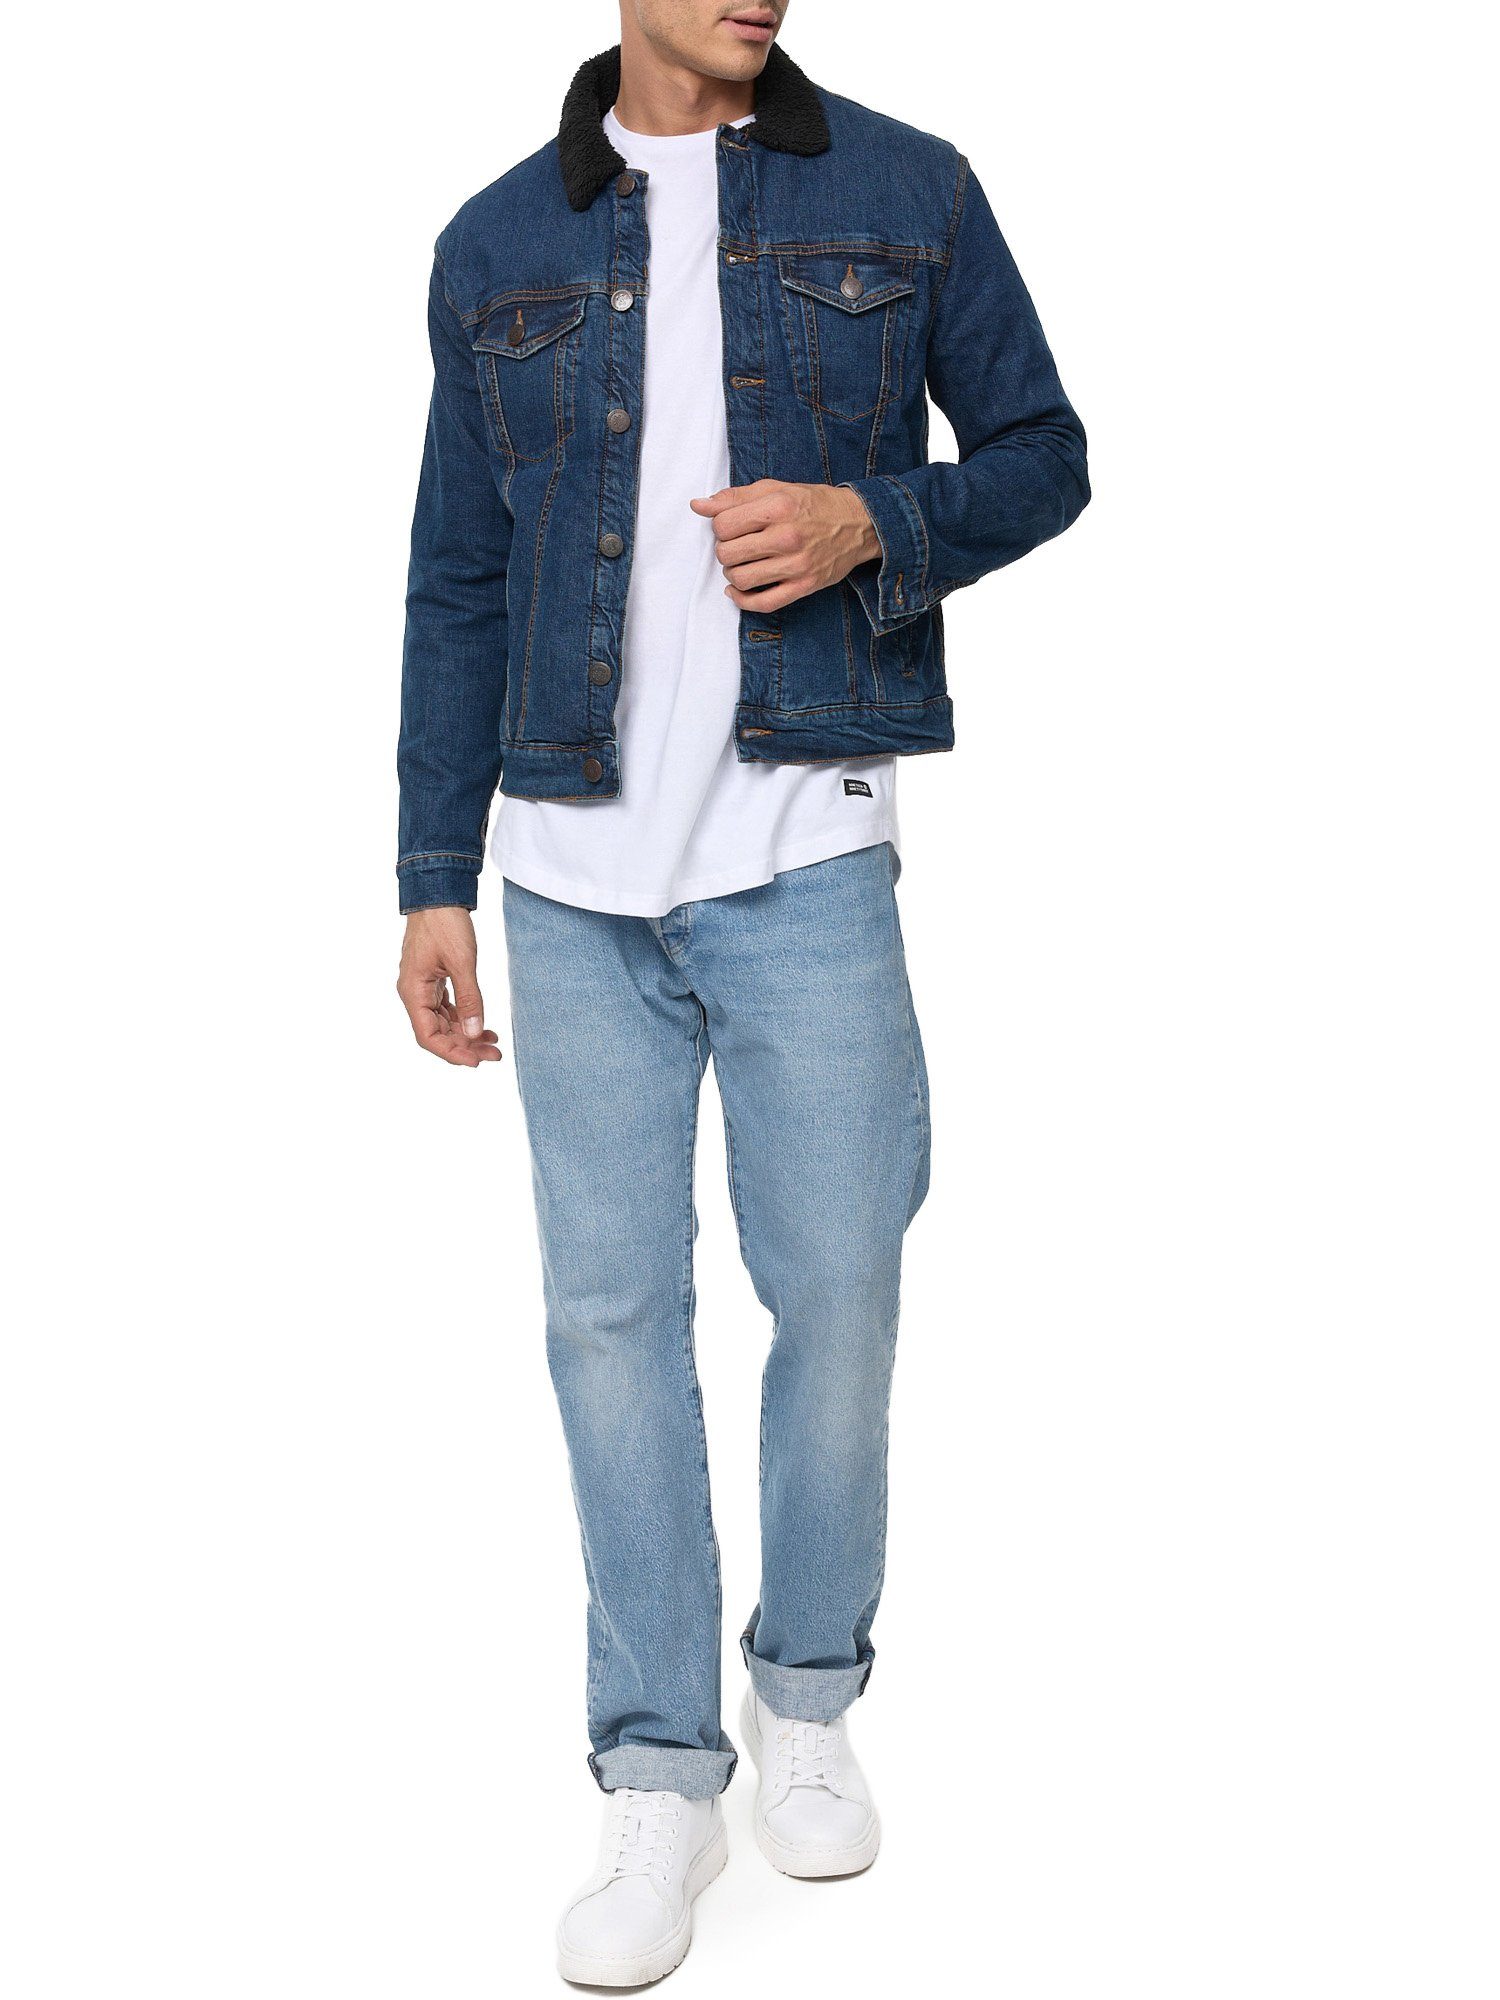 Tazzio Jacke Jeans dunkelblau Fellkragen Jeansjacke mit A400